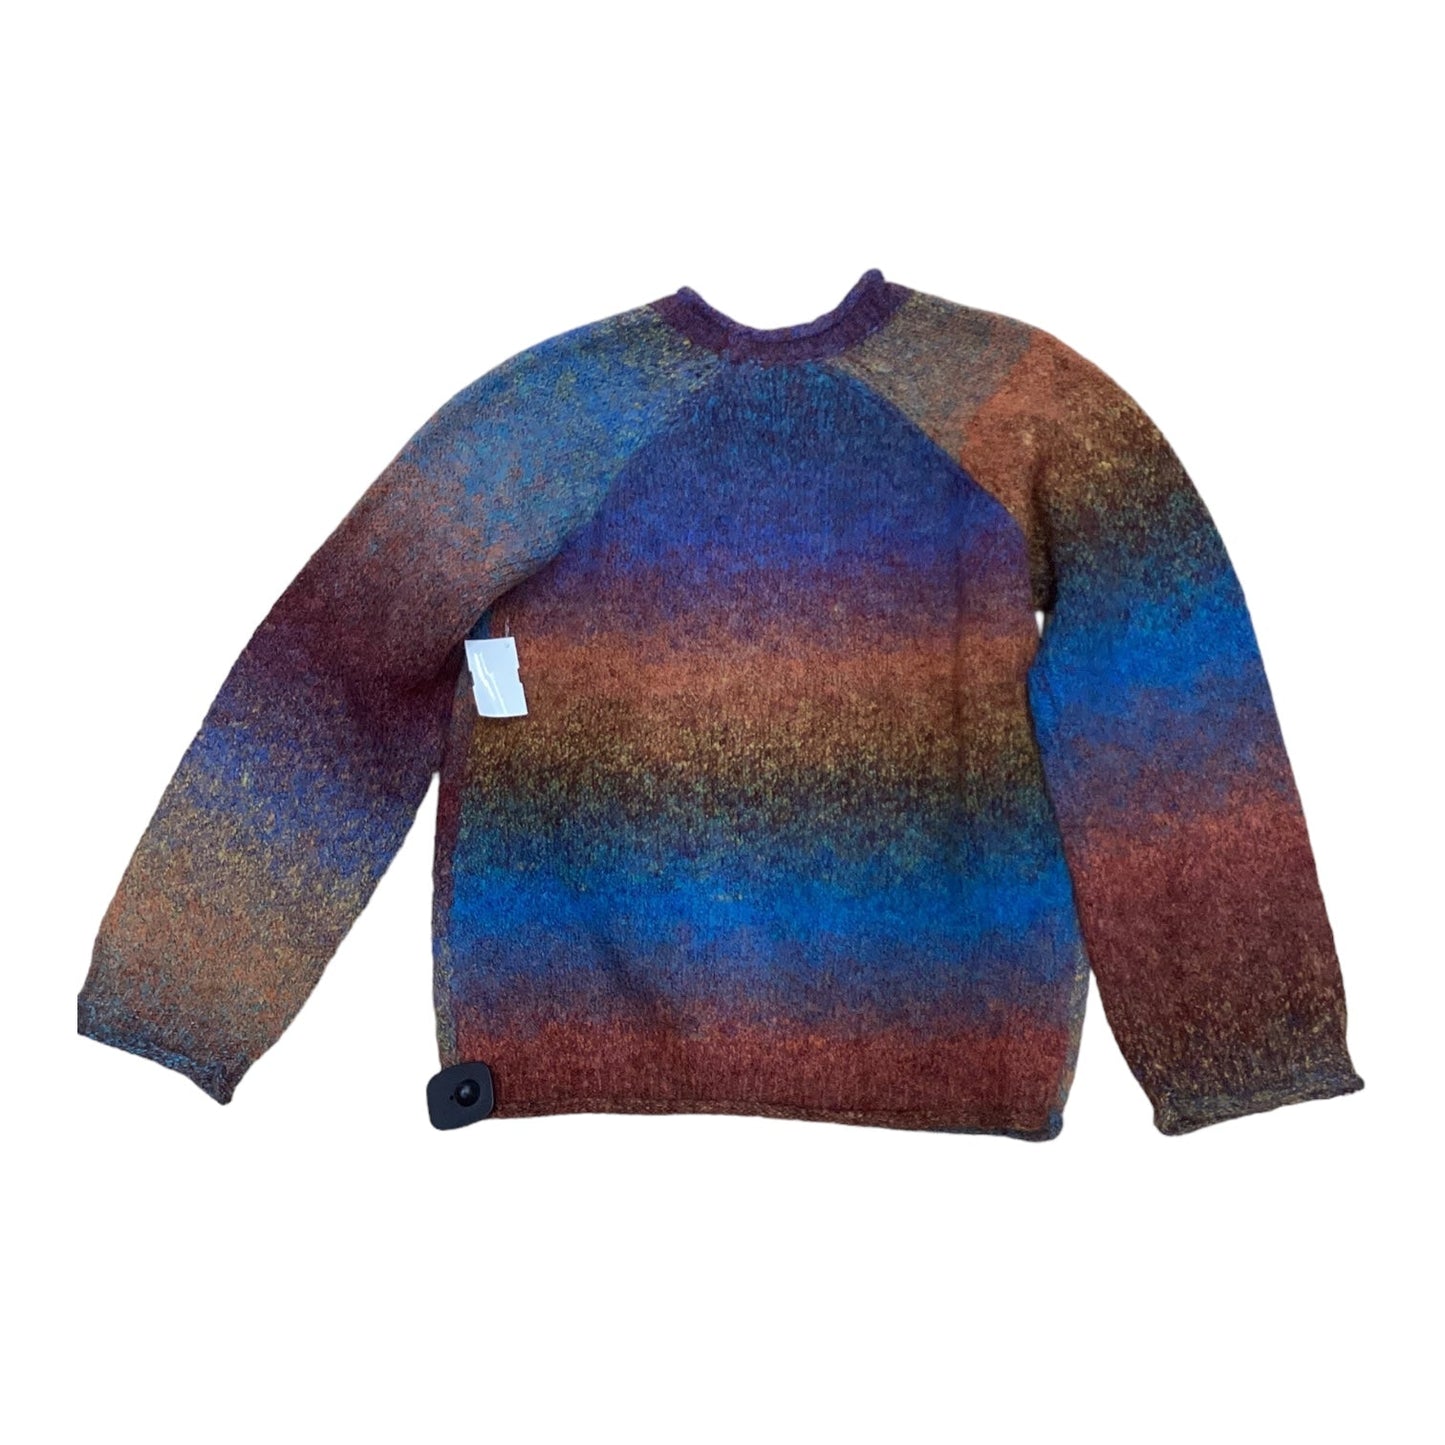 Multi-colored Sweater Dex, Size Xs